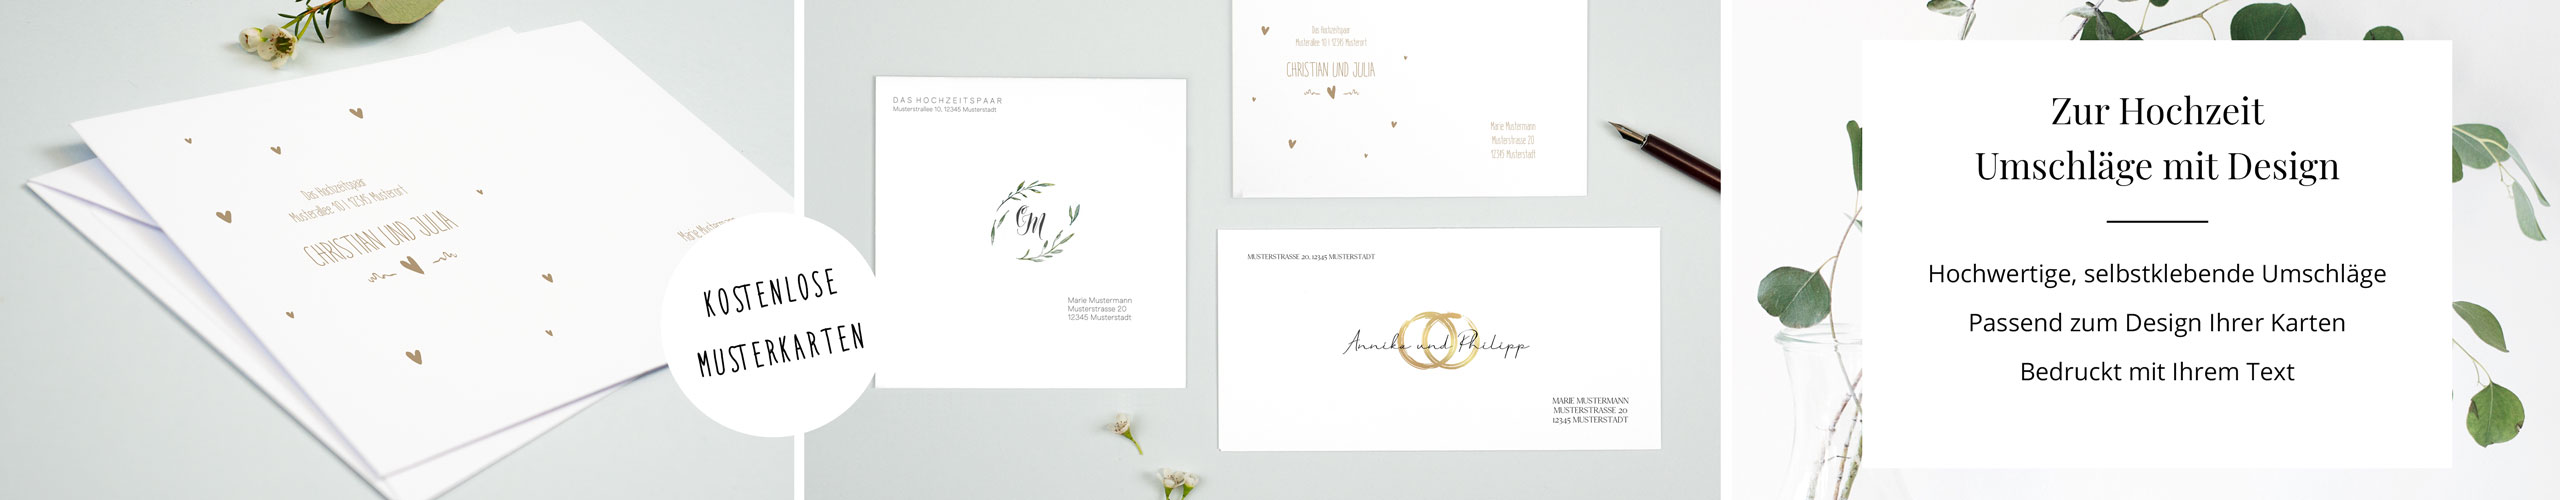 Umschläge für Hochzeitskarten mit unterschiedlichen Designs